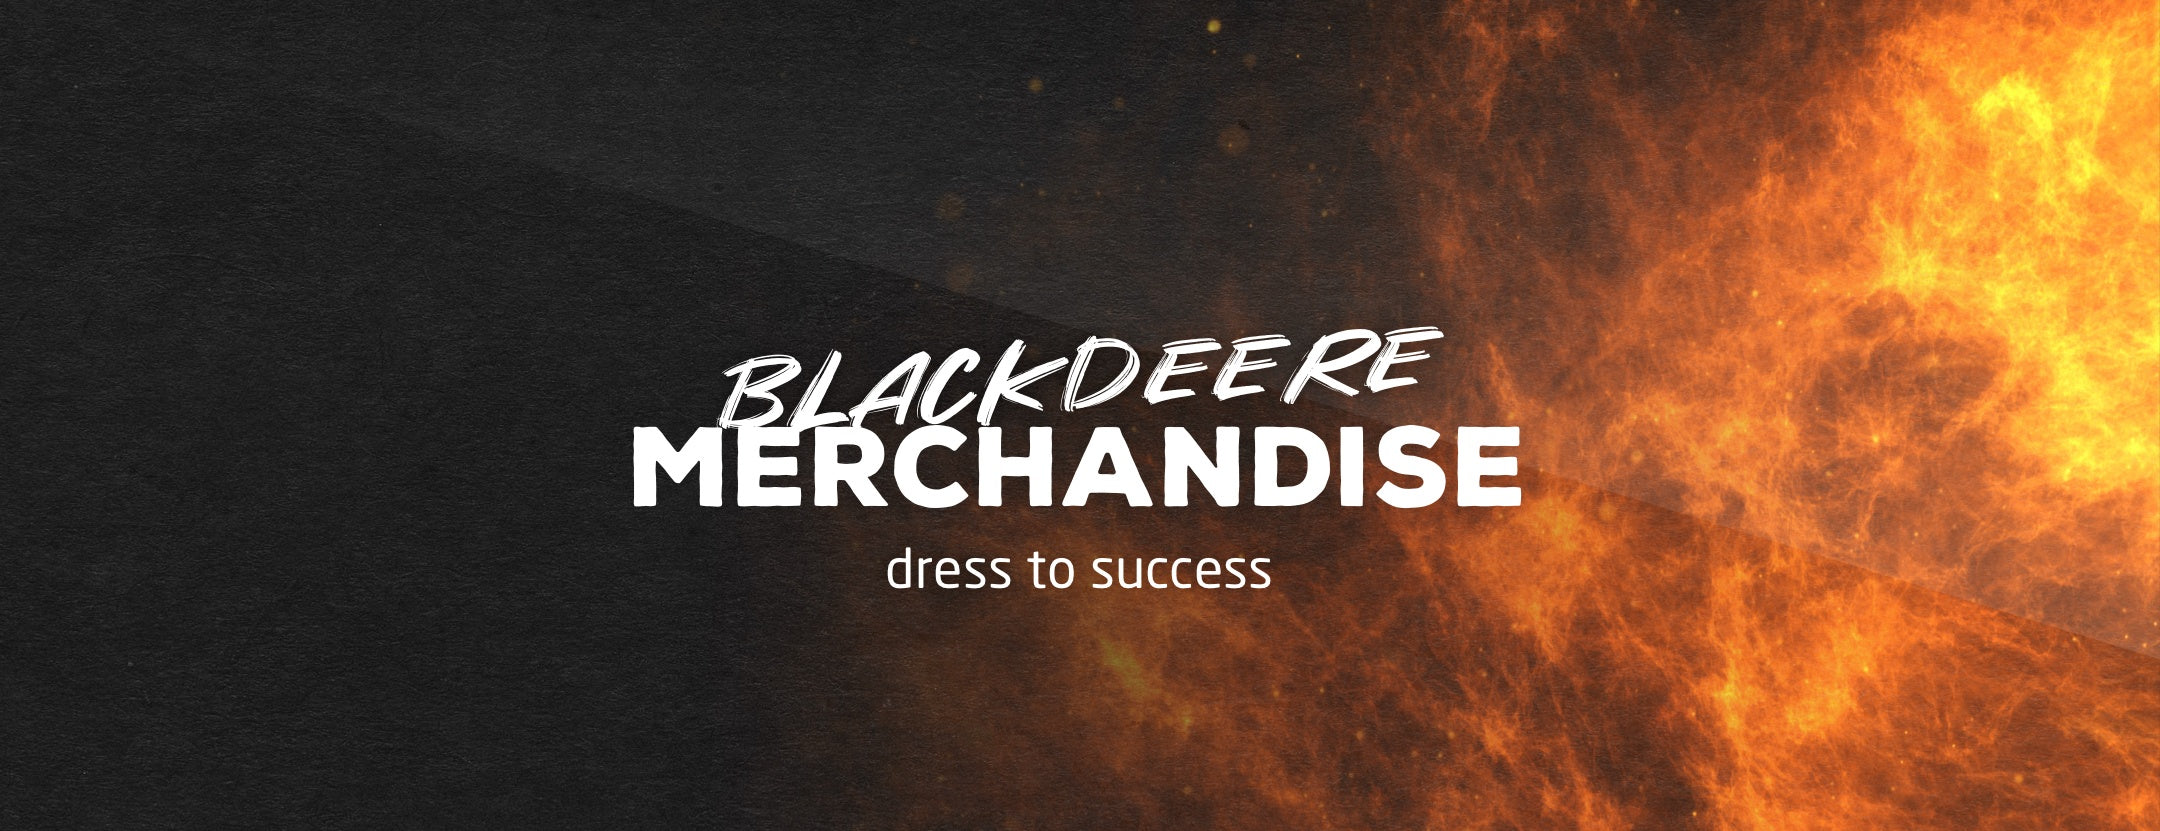 Blackdeere Merchandise